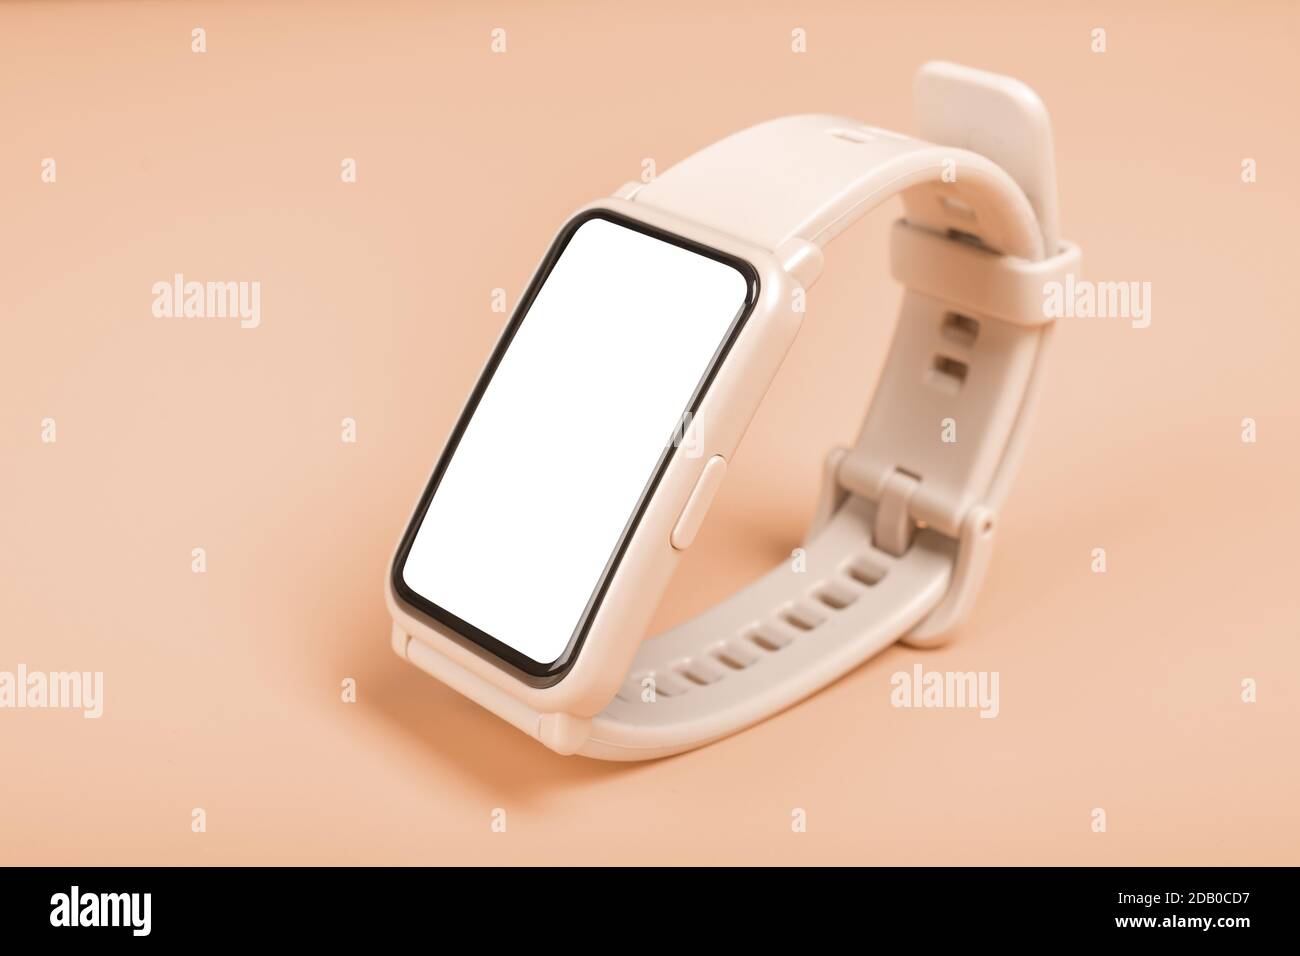 Immagine mockup orologio fitness su sfondo pastello. Primo piano. Vista frontale dello smartwatch rosa con display touchscreen bianco vuoto. Concetto di orologio fitness. Foto Stock